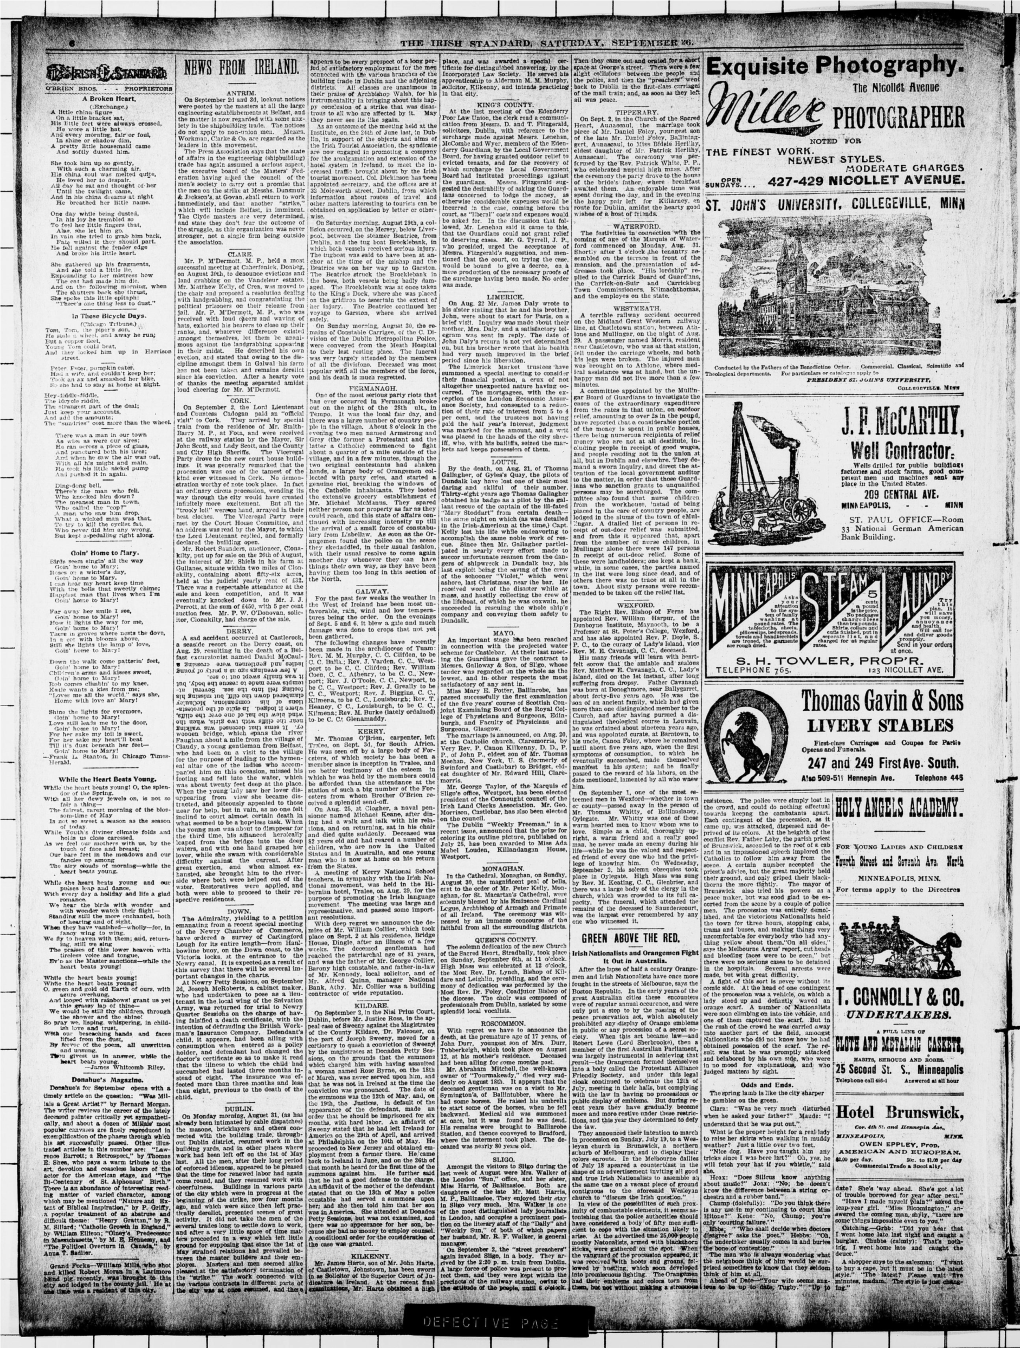 The Irish Standard. (Minneapolis, Minn. ; St. Paul, Minn.), 1896-09-26, [P ]